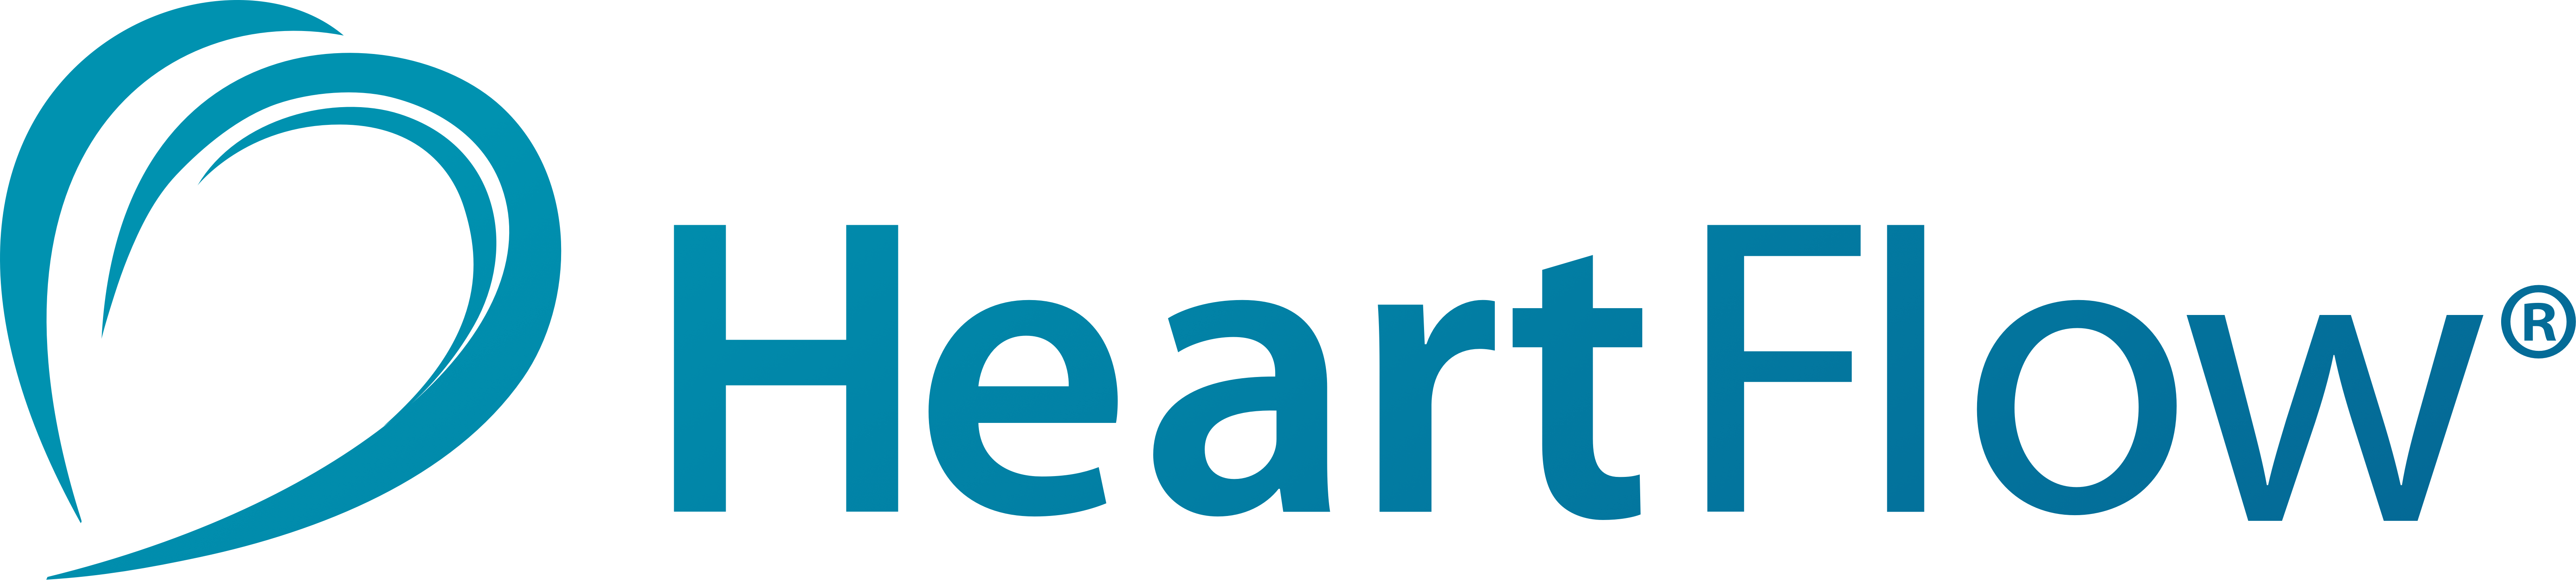 HeartFlow logo